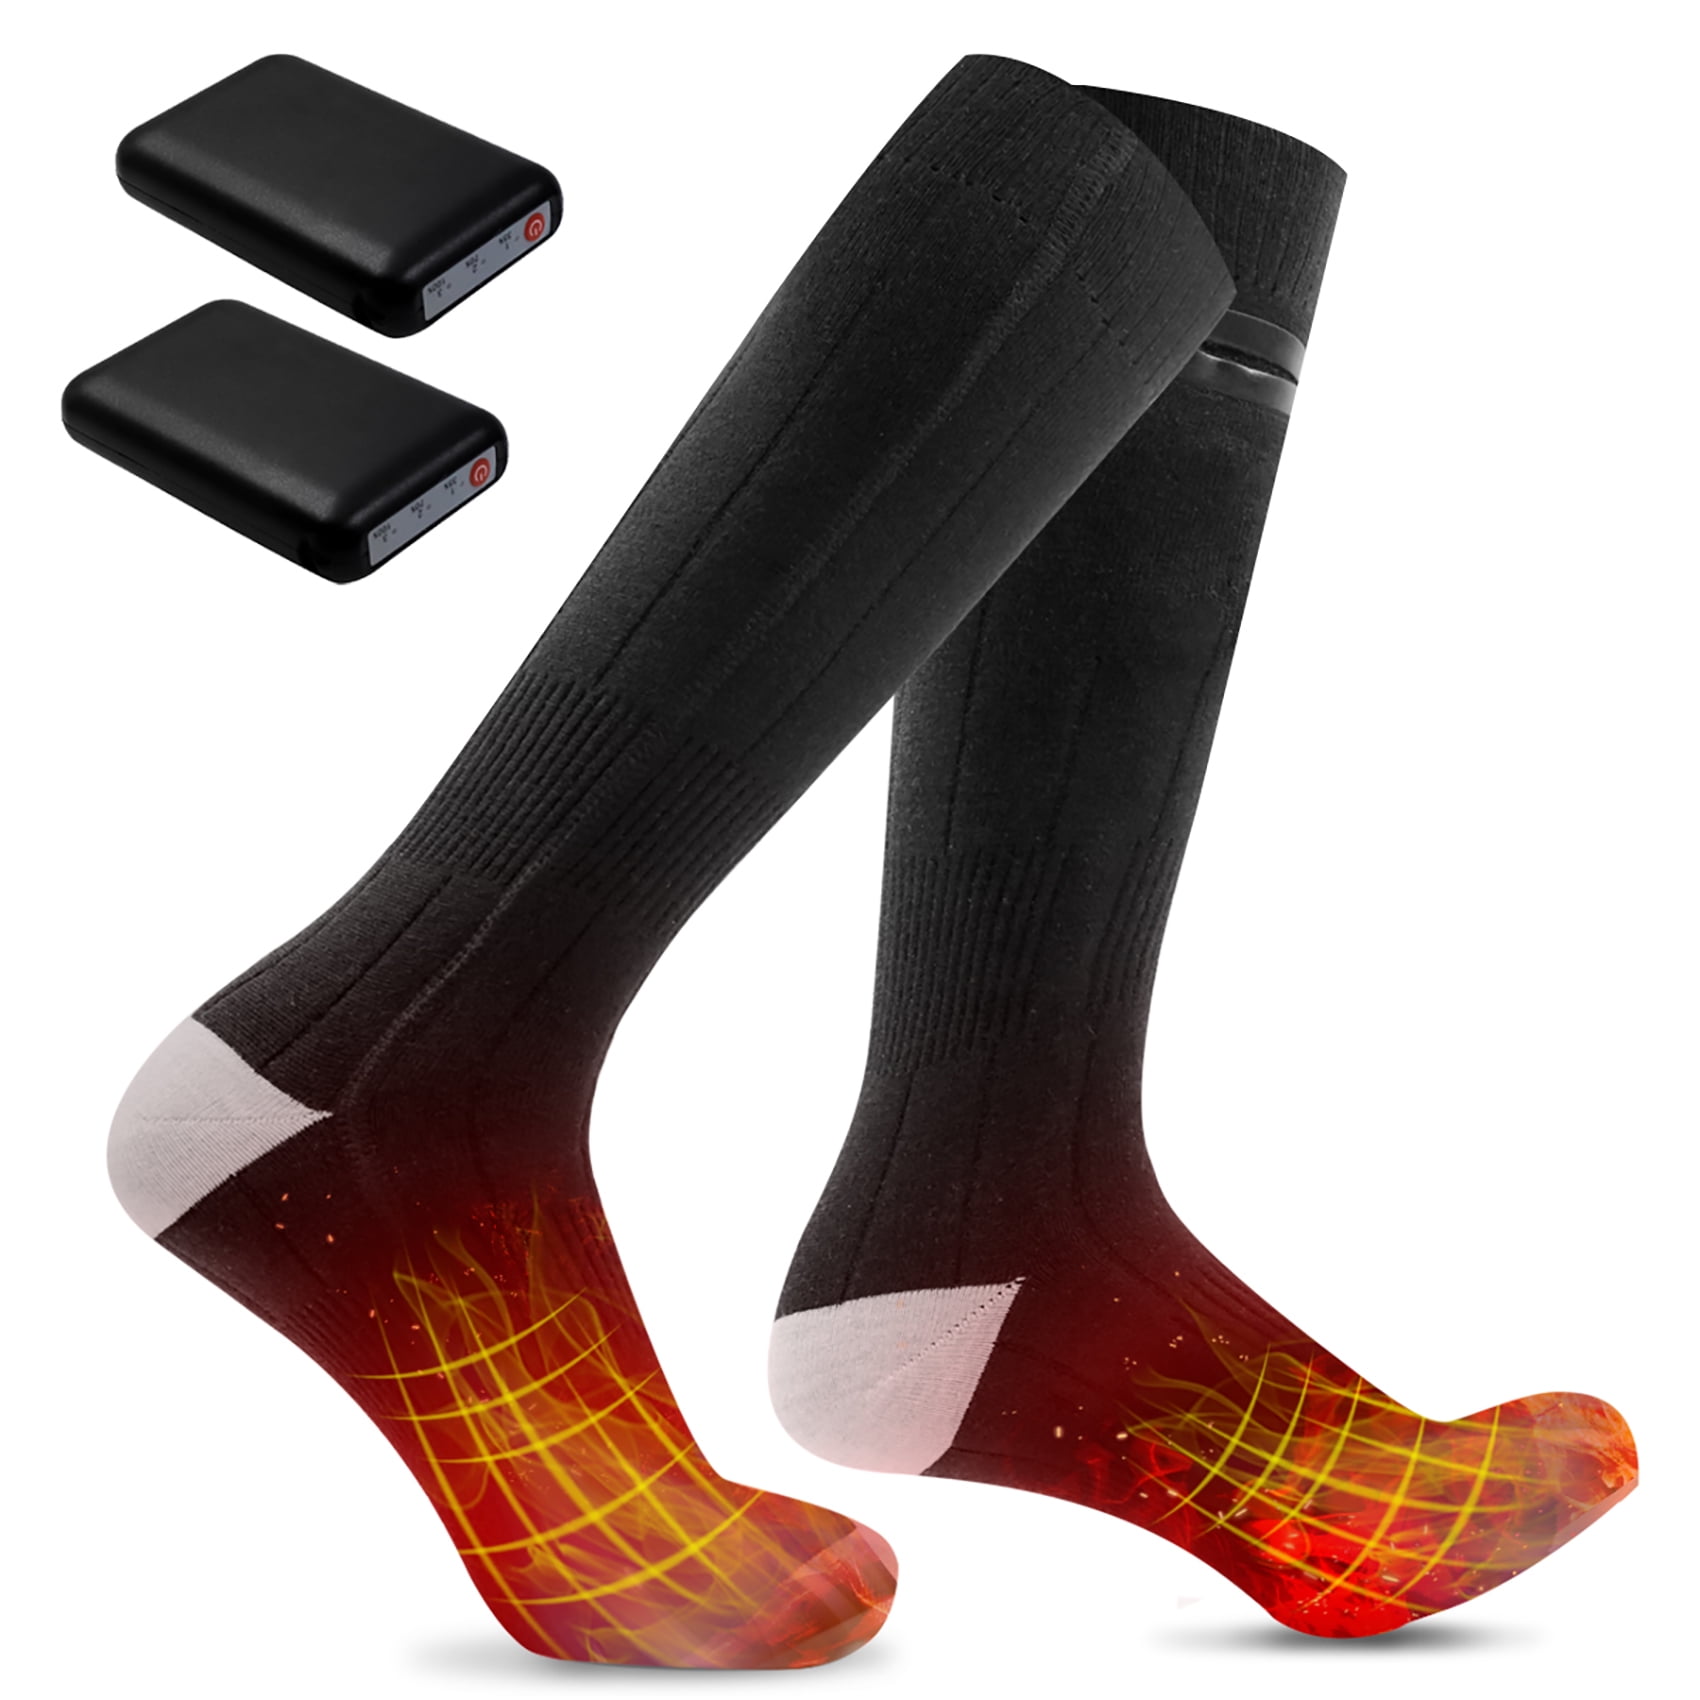 Battery Electric Heated Hot Socks Foot Feet Warmer For Women Men Winter Outdoor 